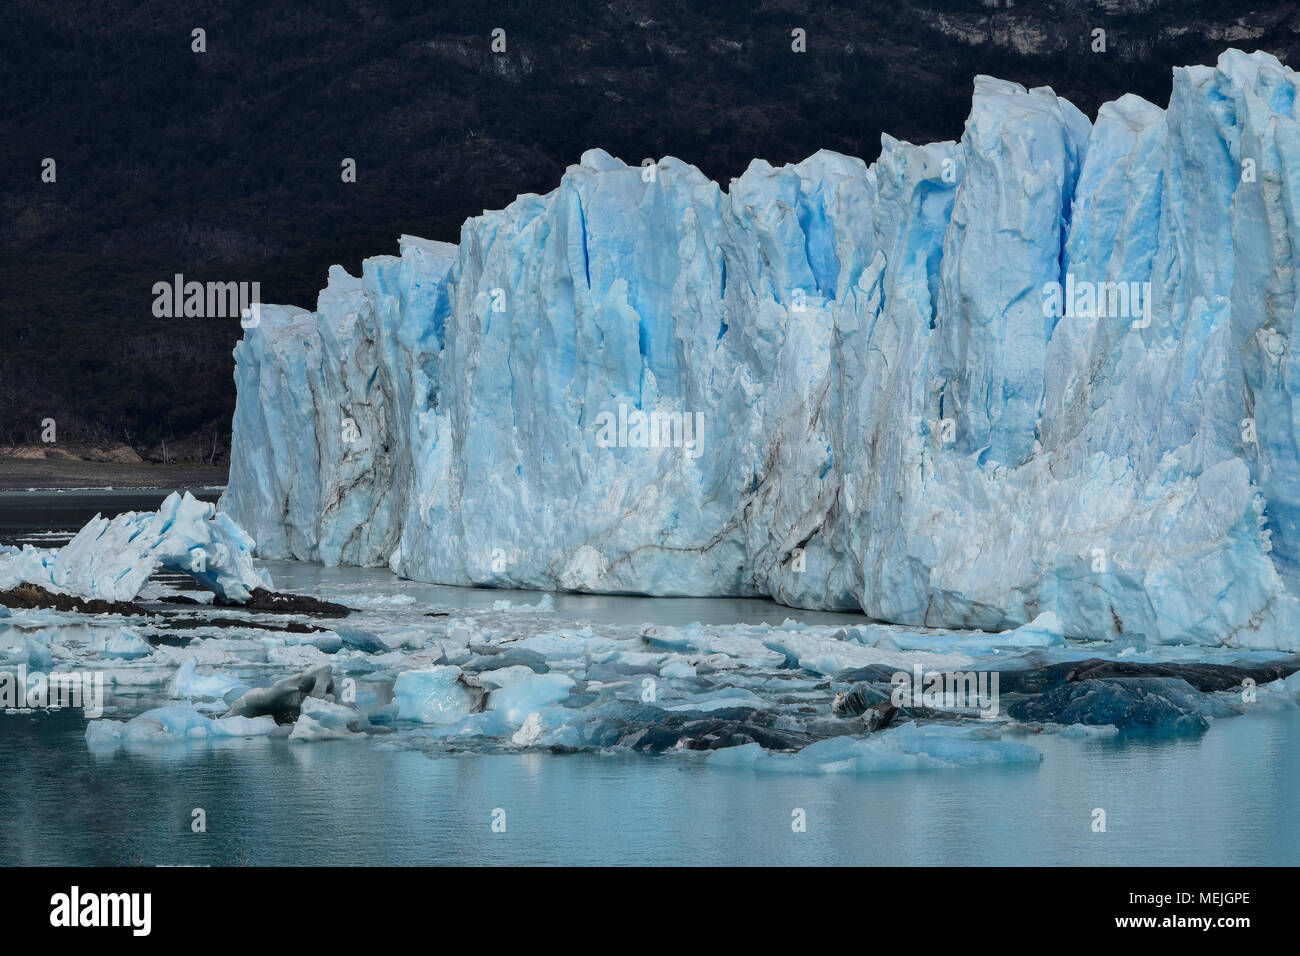 The perito Moreno glacier in patagonia (Argentina) Stock Photo